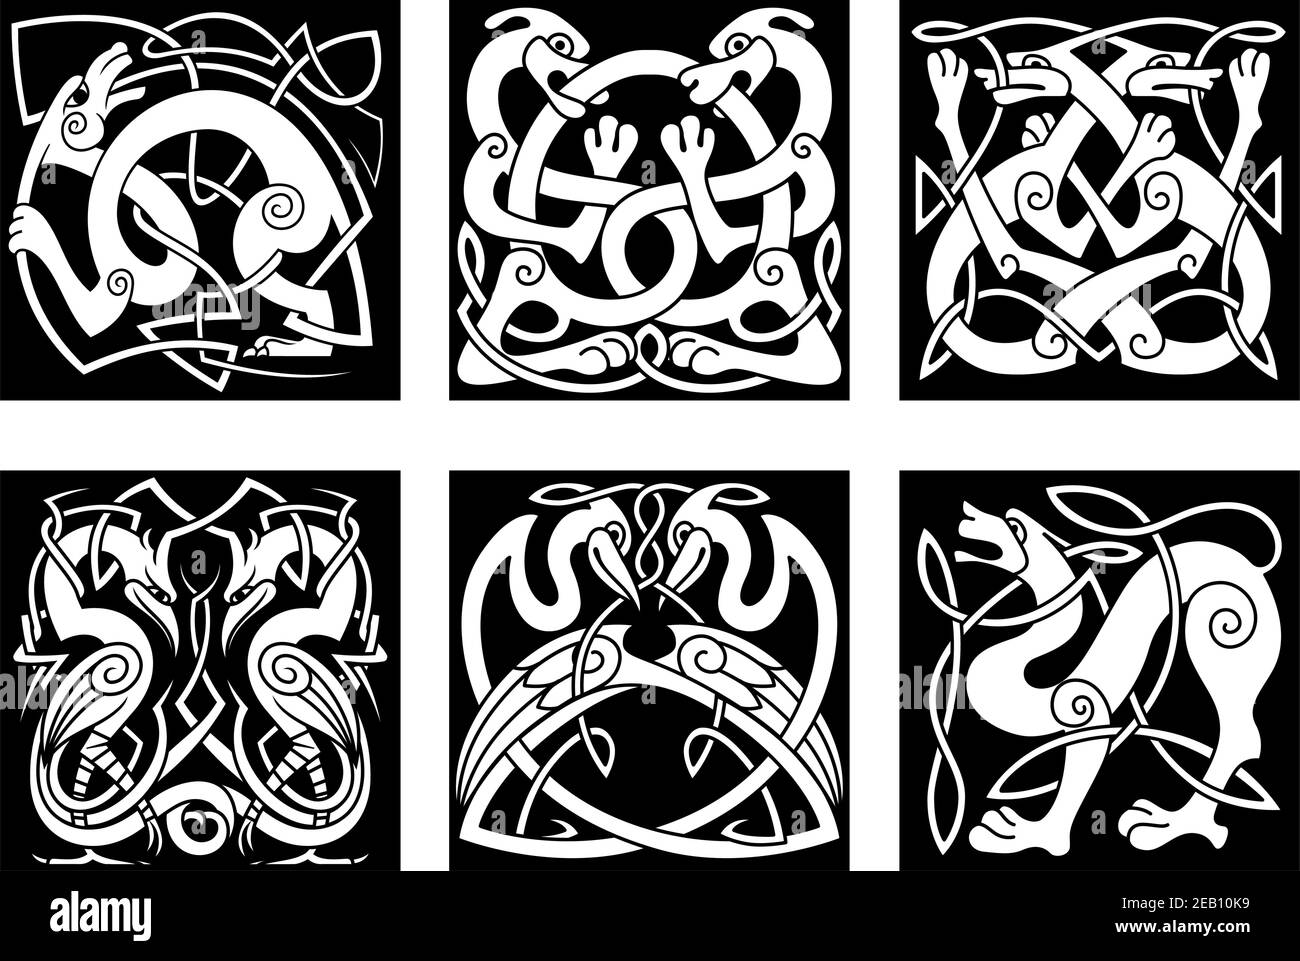 Hunde, Wölfe, Störche und Reiher im keltischen Ornamentstil für Mittelalter- oder Tattoo-Design Stock Vektor